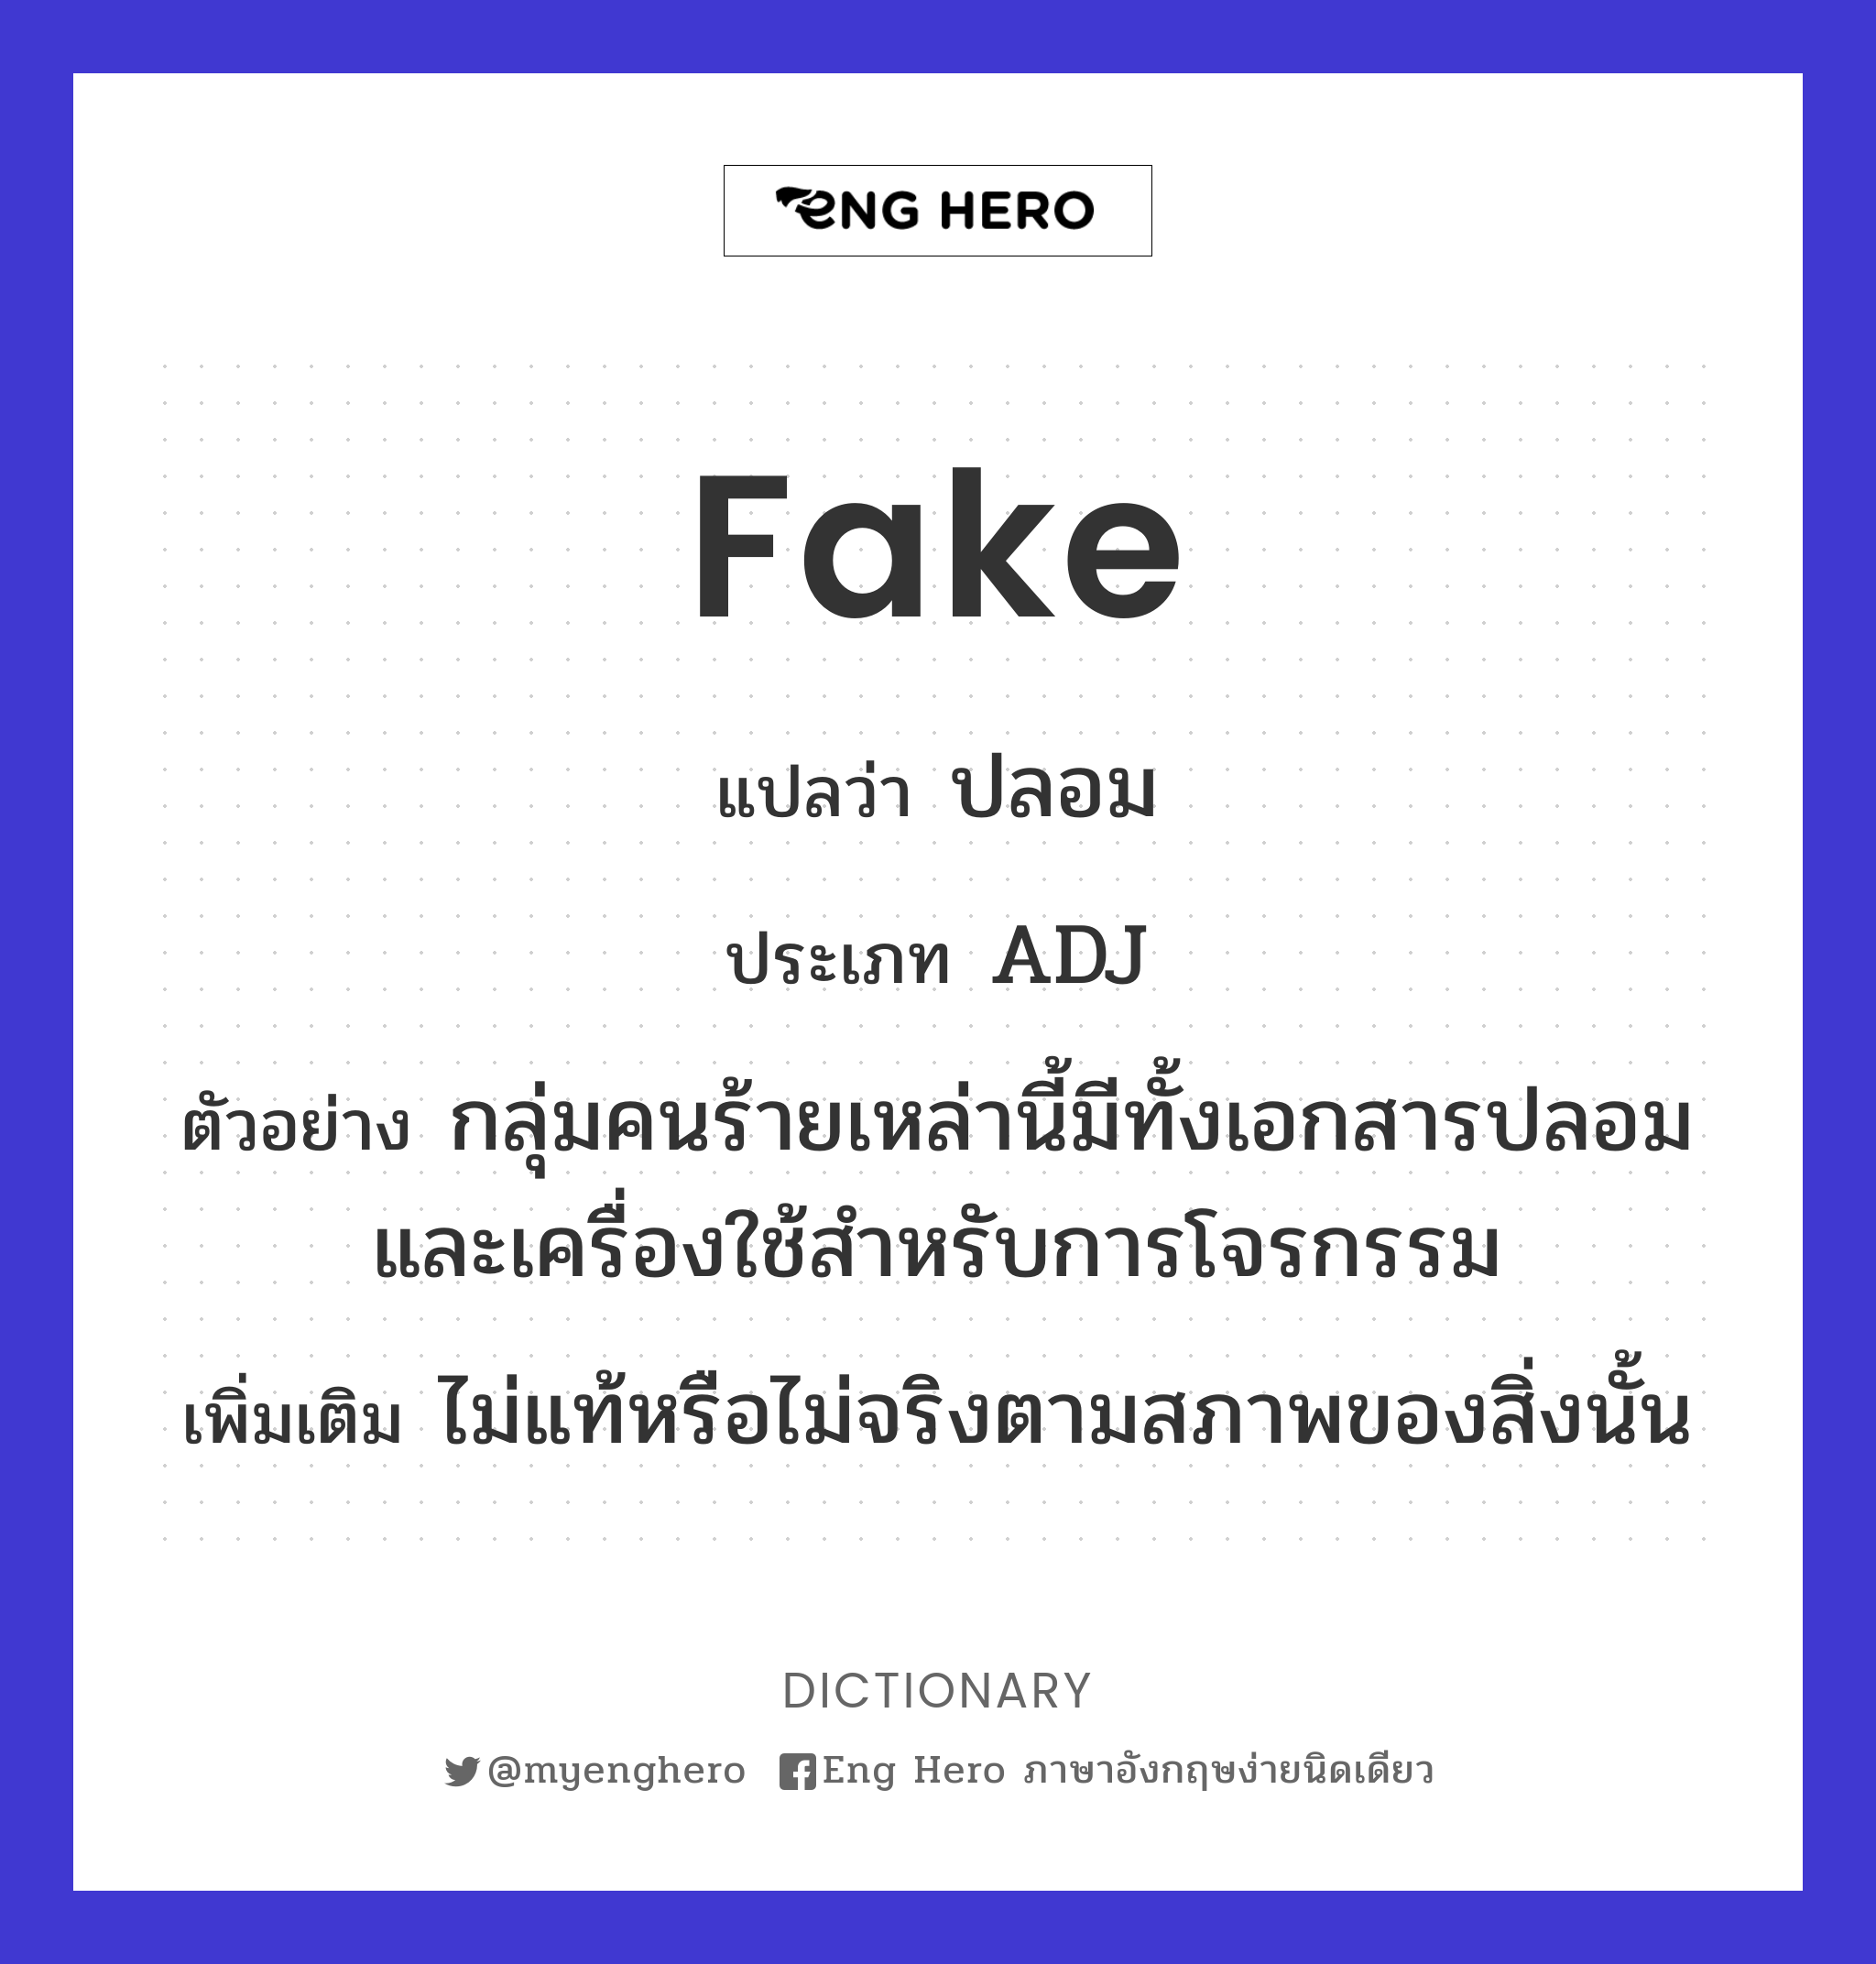 fake